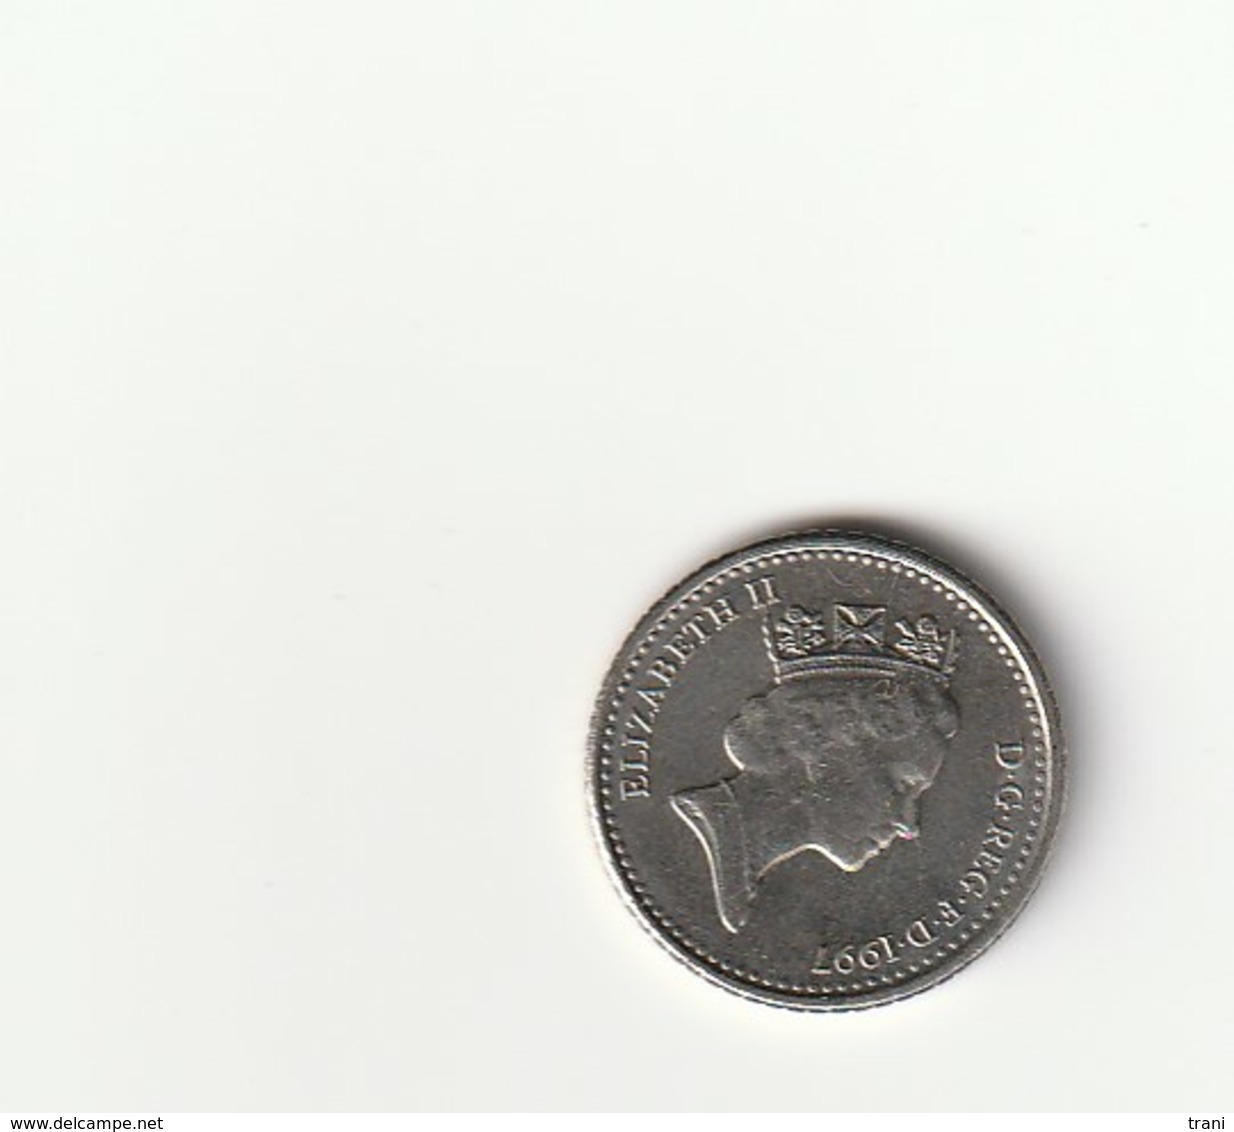 5 PENCE - ENGLAND - 1997 - 5 Pence & 5 New Pence